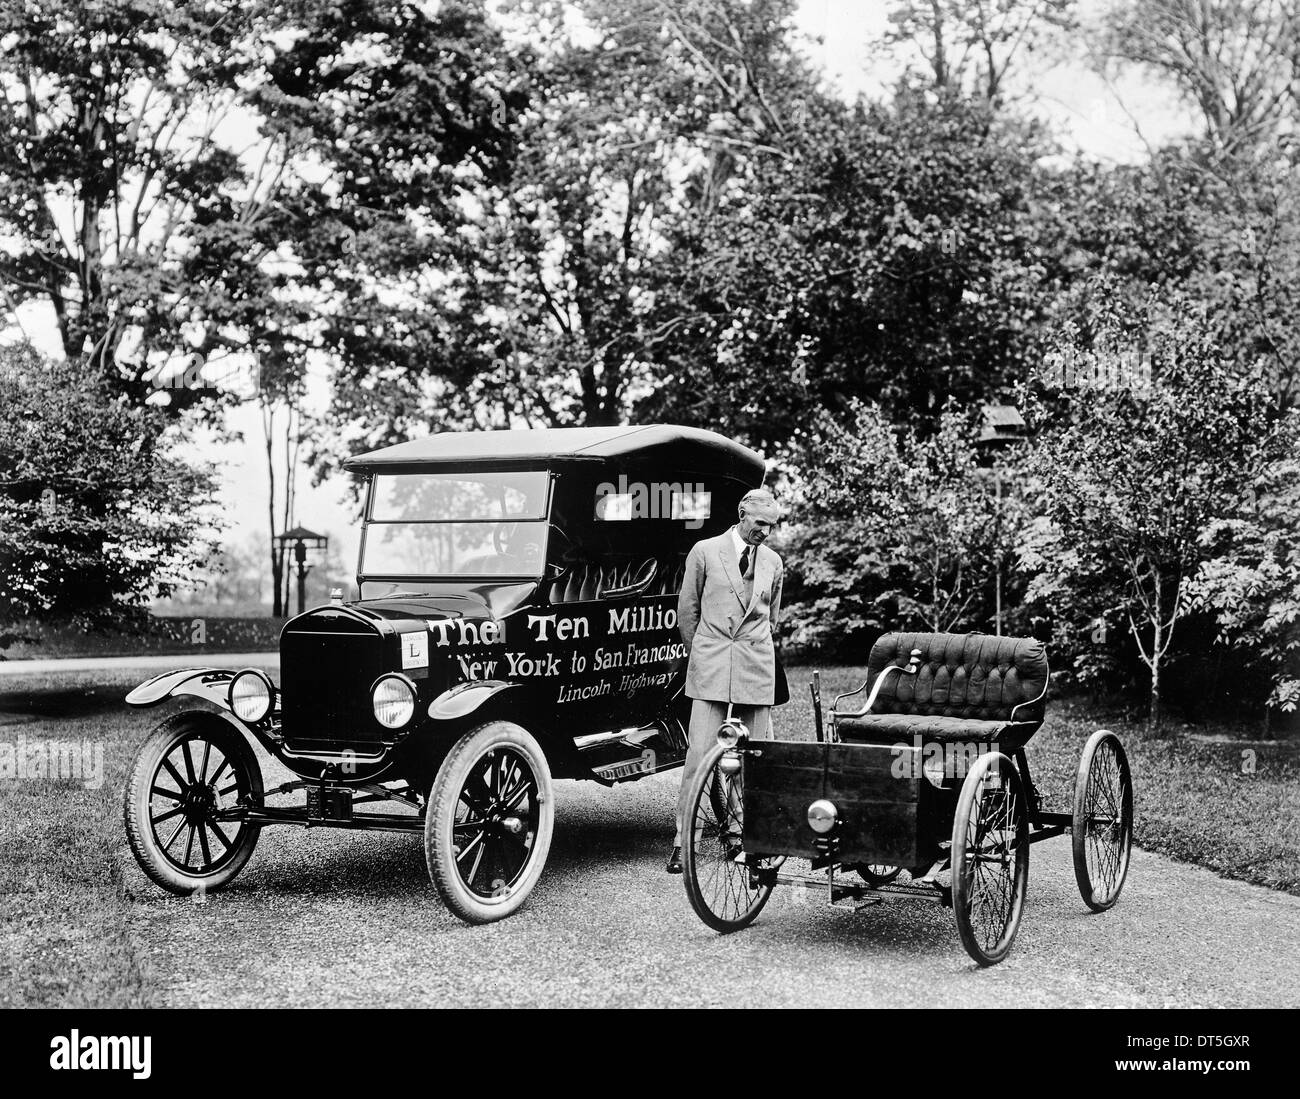 Primo e dieci milionesima Ford, 1924 "i dieci milionesima Ford, New York a San Francisco, Lincoln Highway" a sinistra auto. Foto Stock